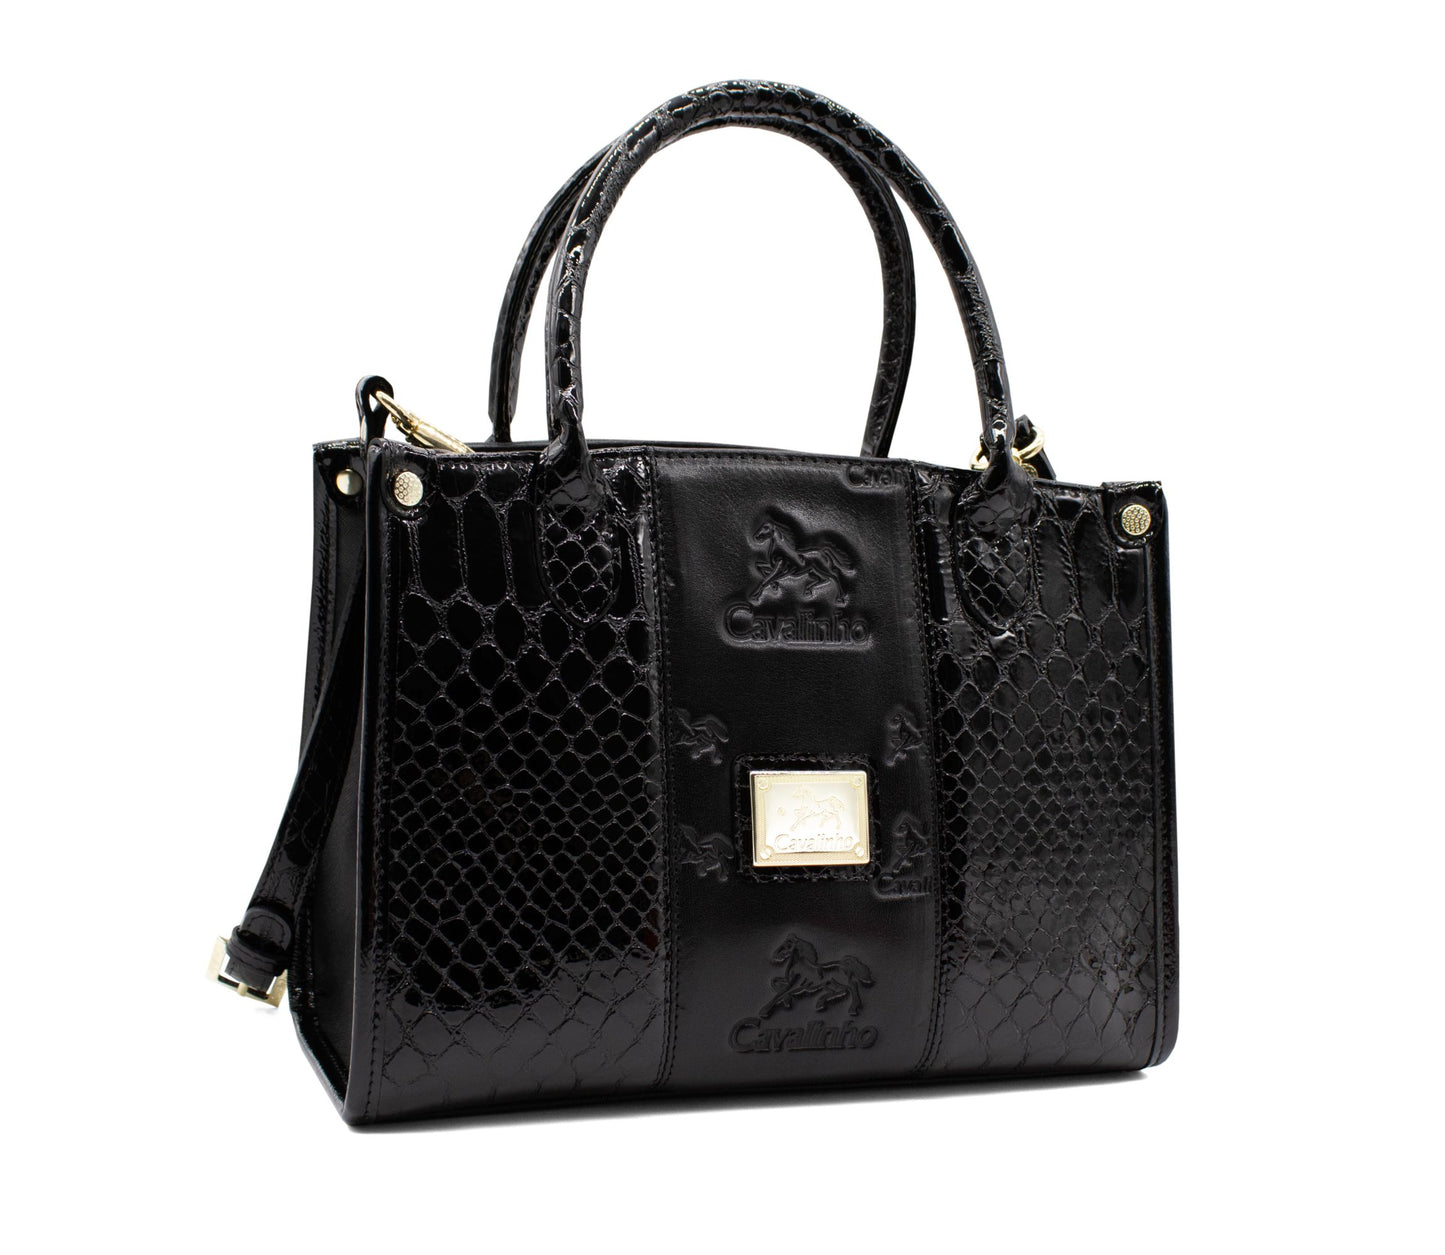 Cavalinho Honor Handbag - Black - 18190480.01_2